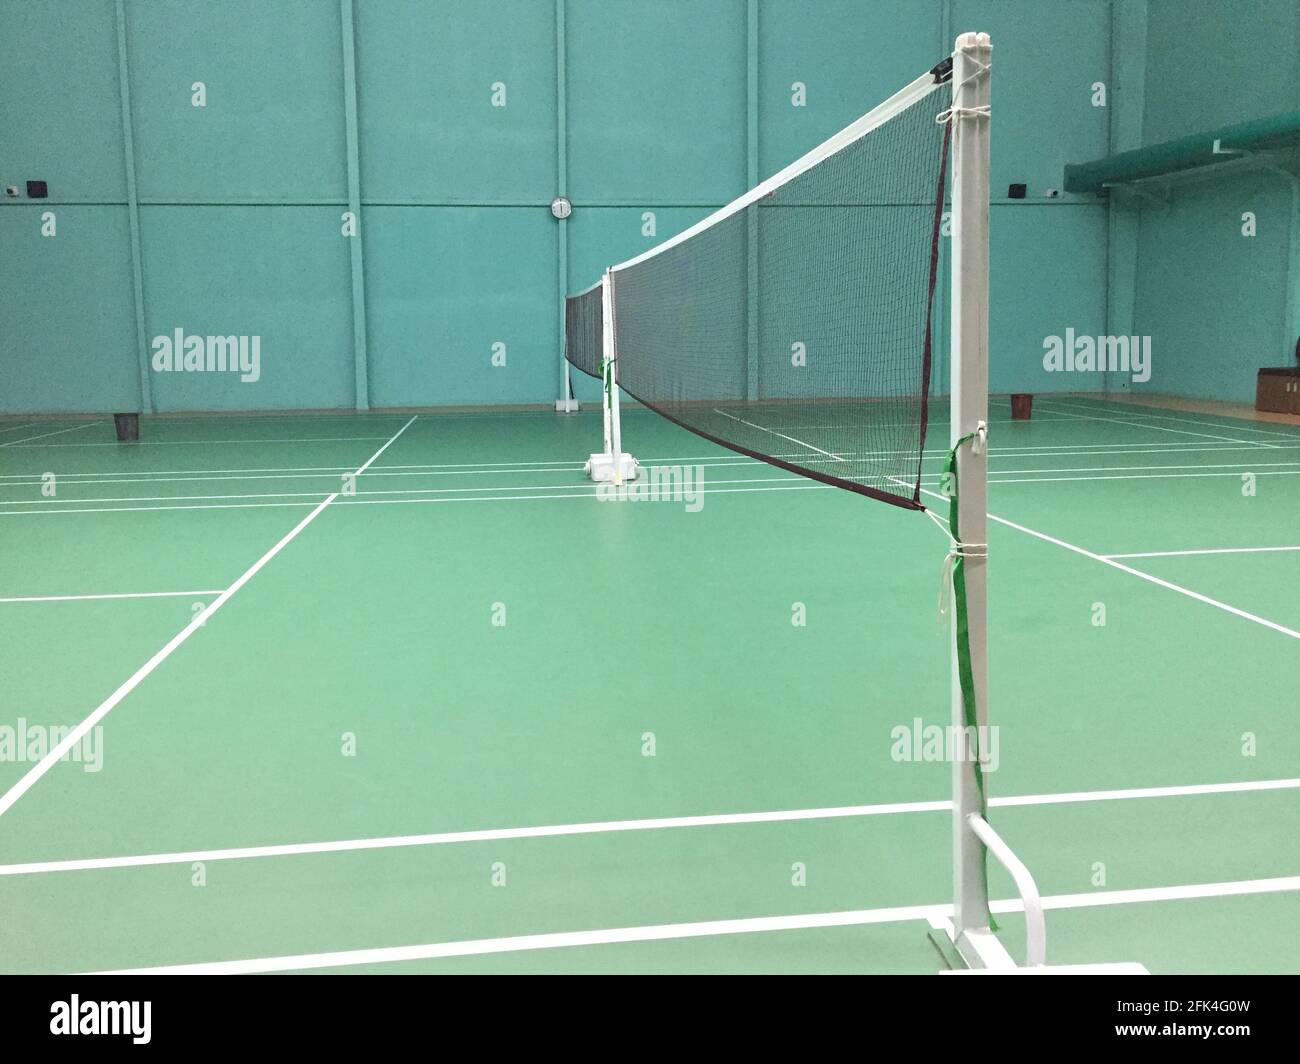 Terrain de badminton intérieur vide Photo Stock - Alamy